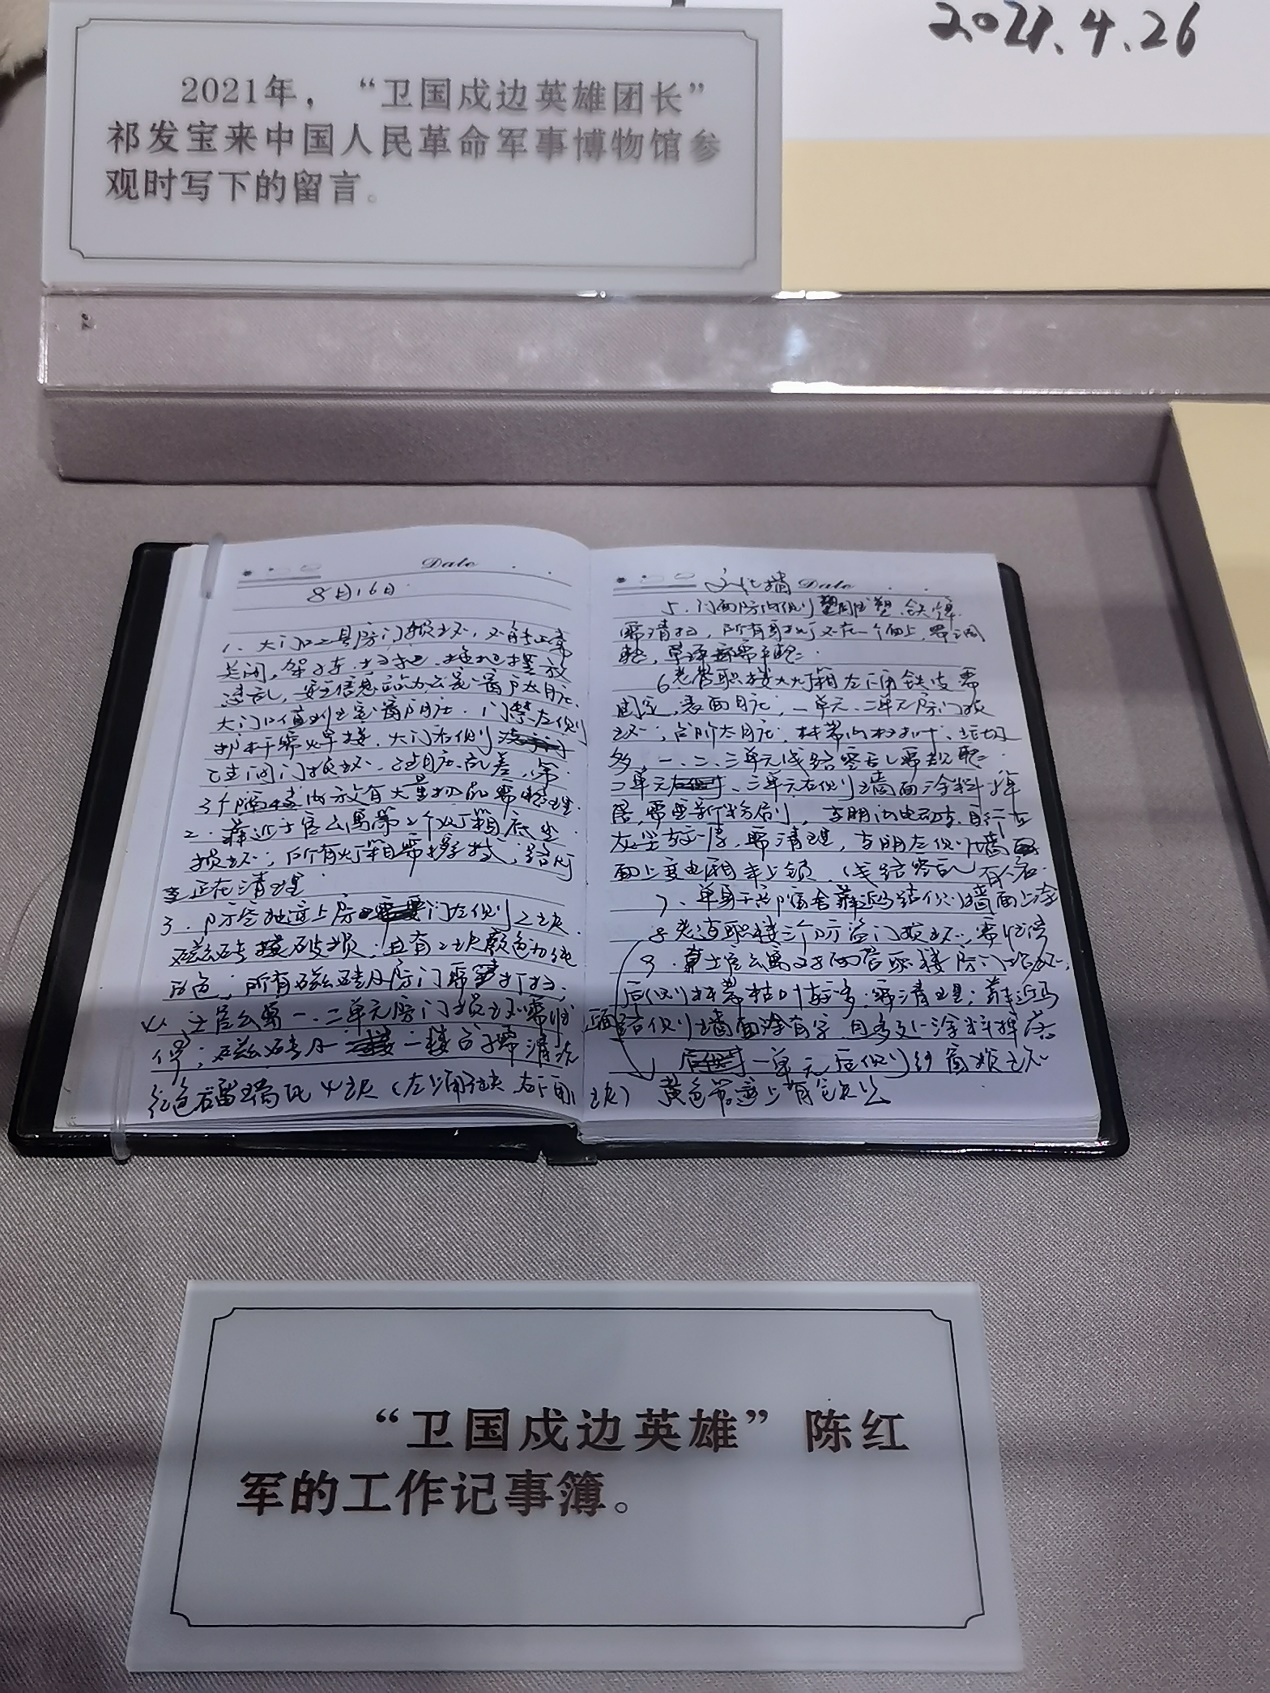 “卫国戍边英雄”陈红军的工作记事簿。